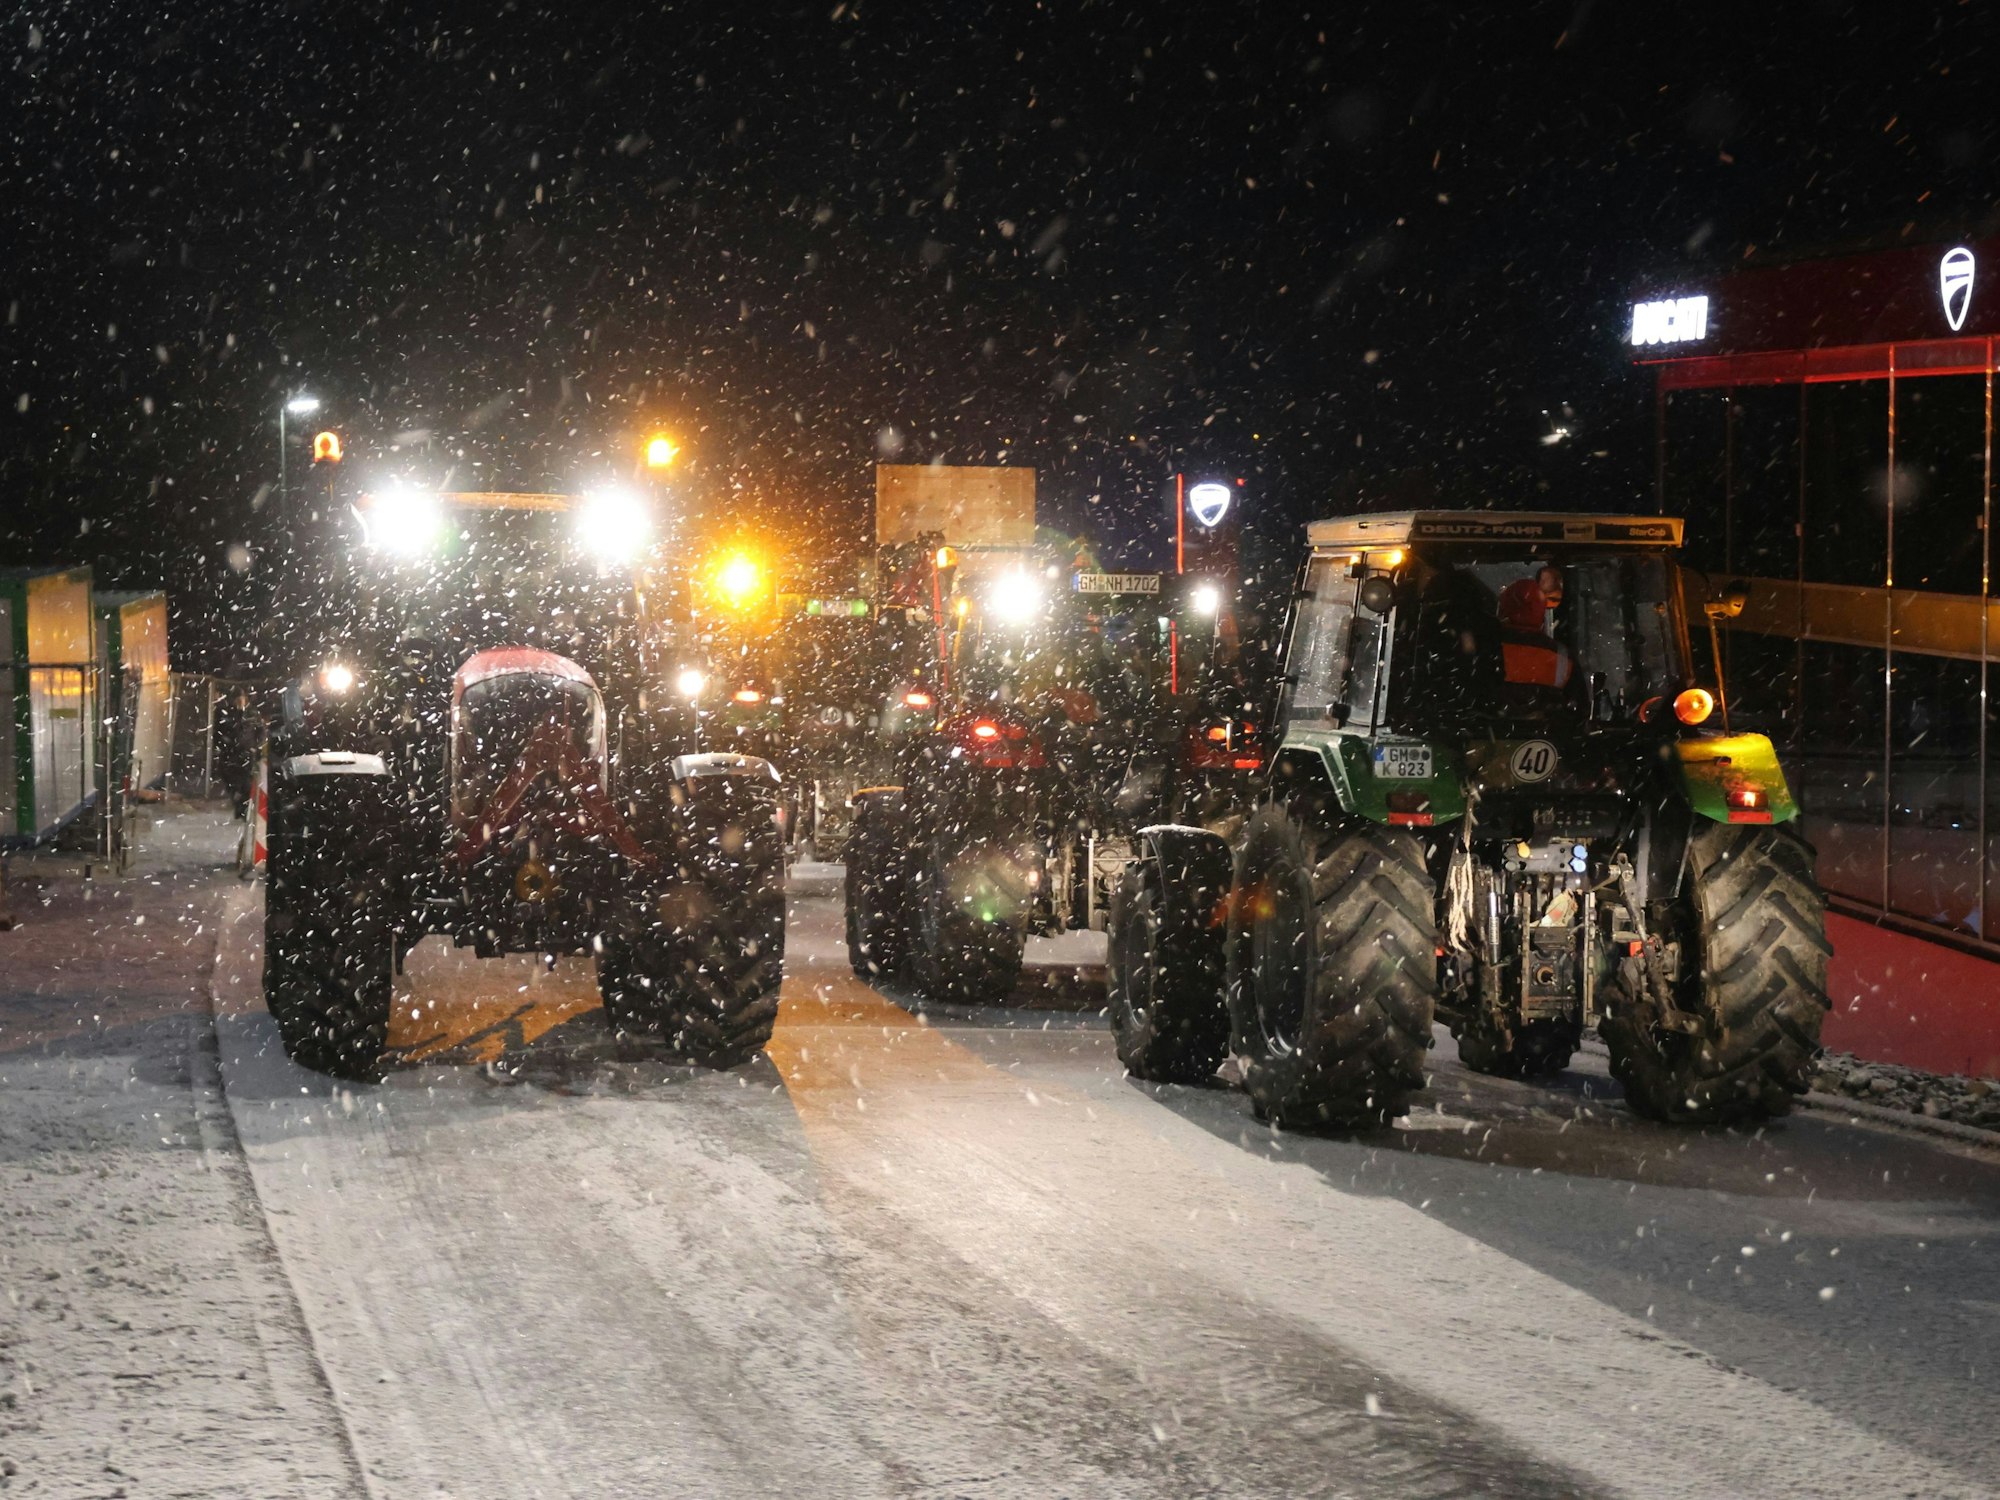 Mehrere Traktoren im Schneegestöber.